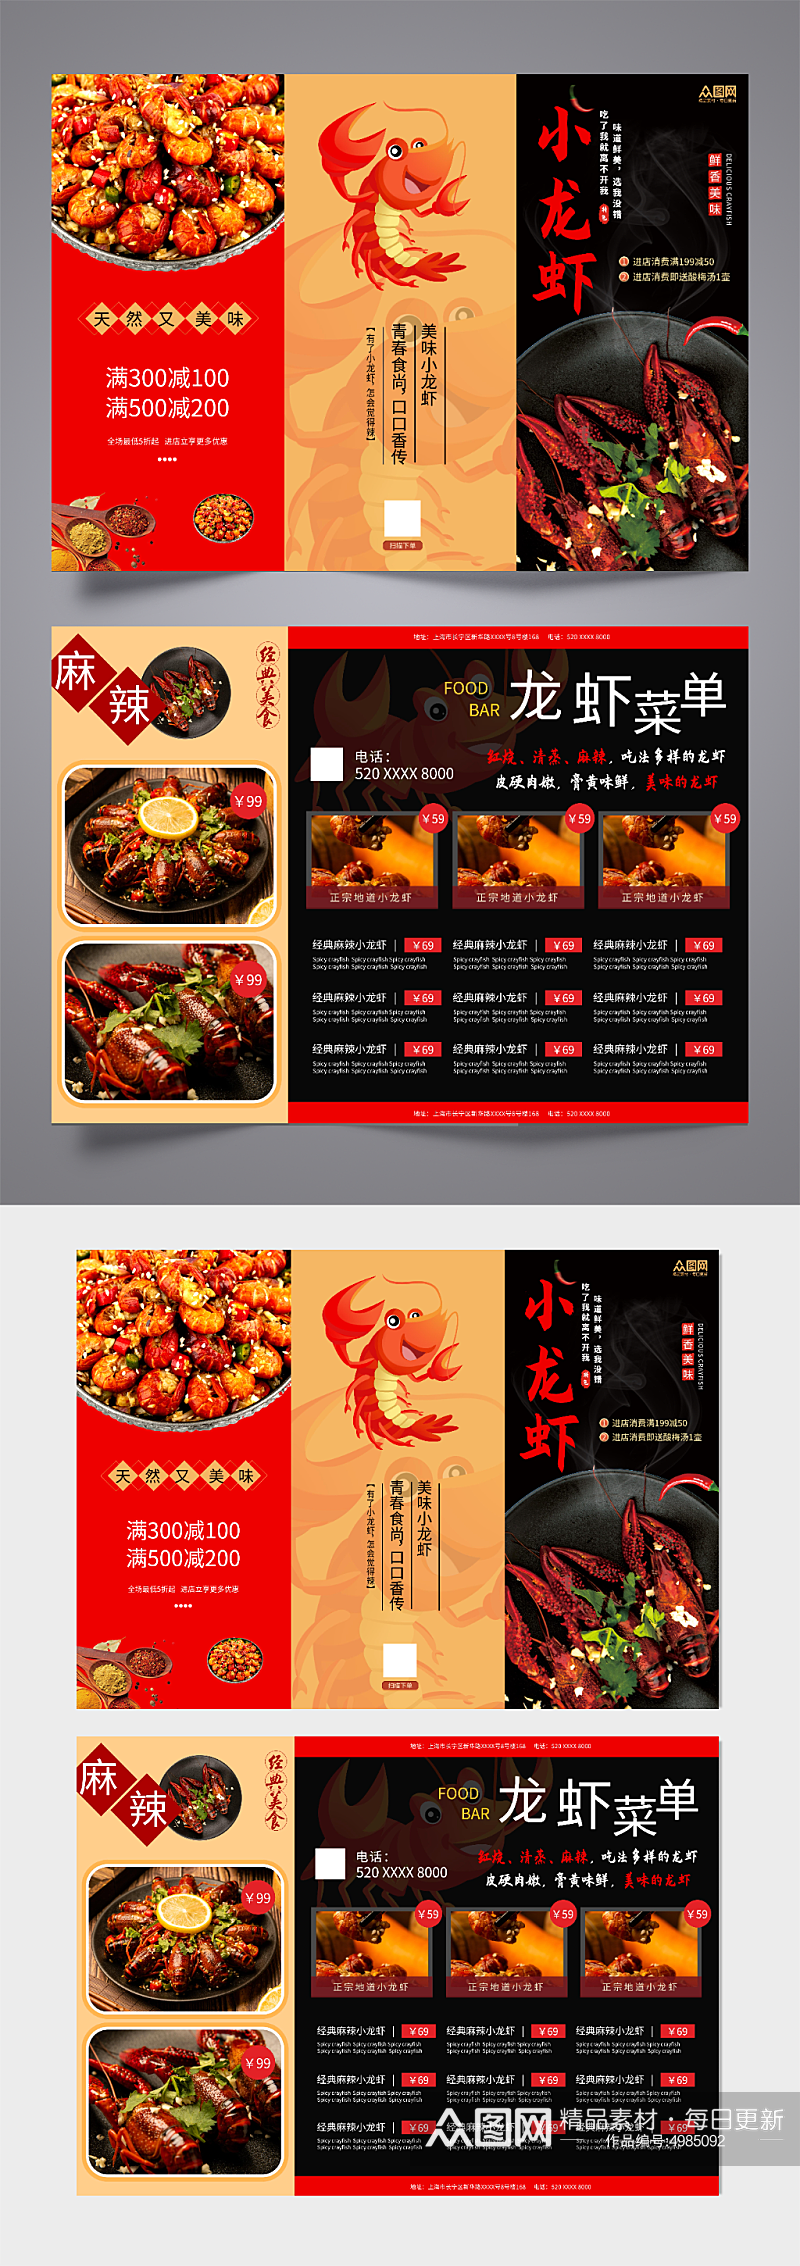 红色麻辣小龙虾特色美食三折页菜单素材